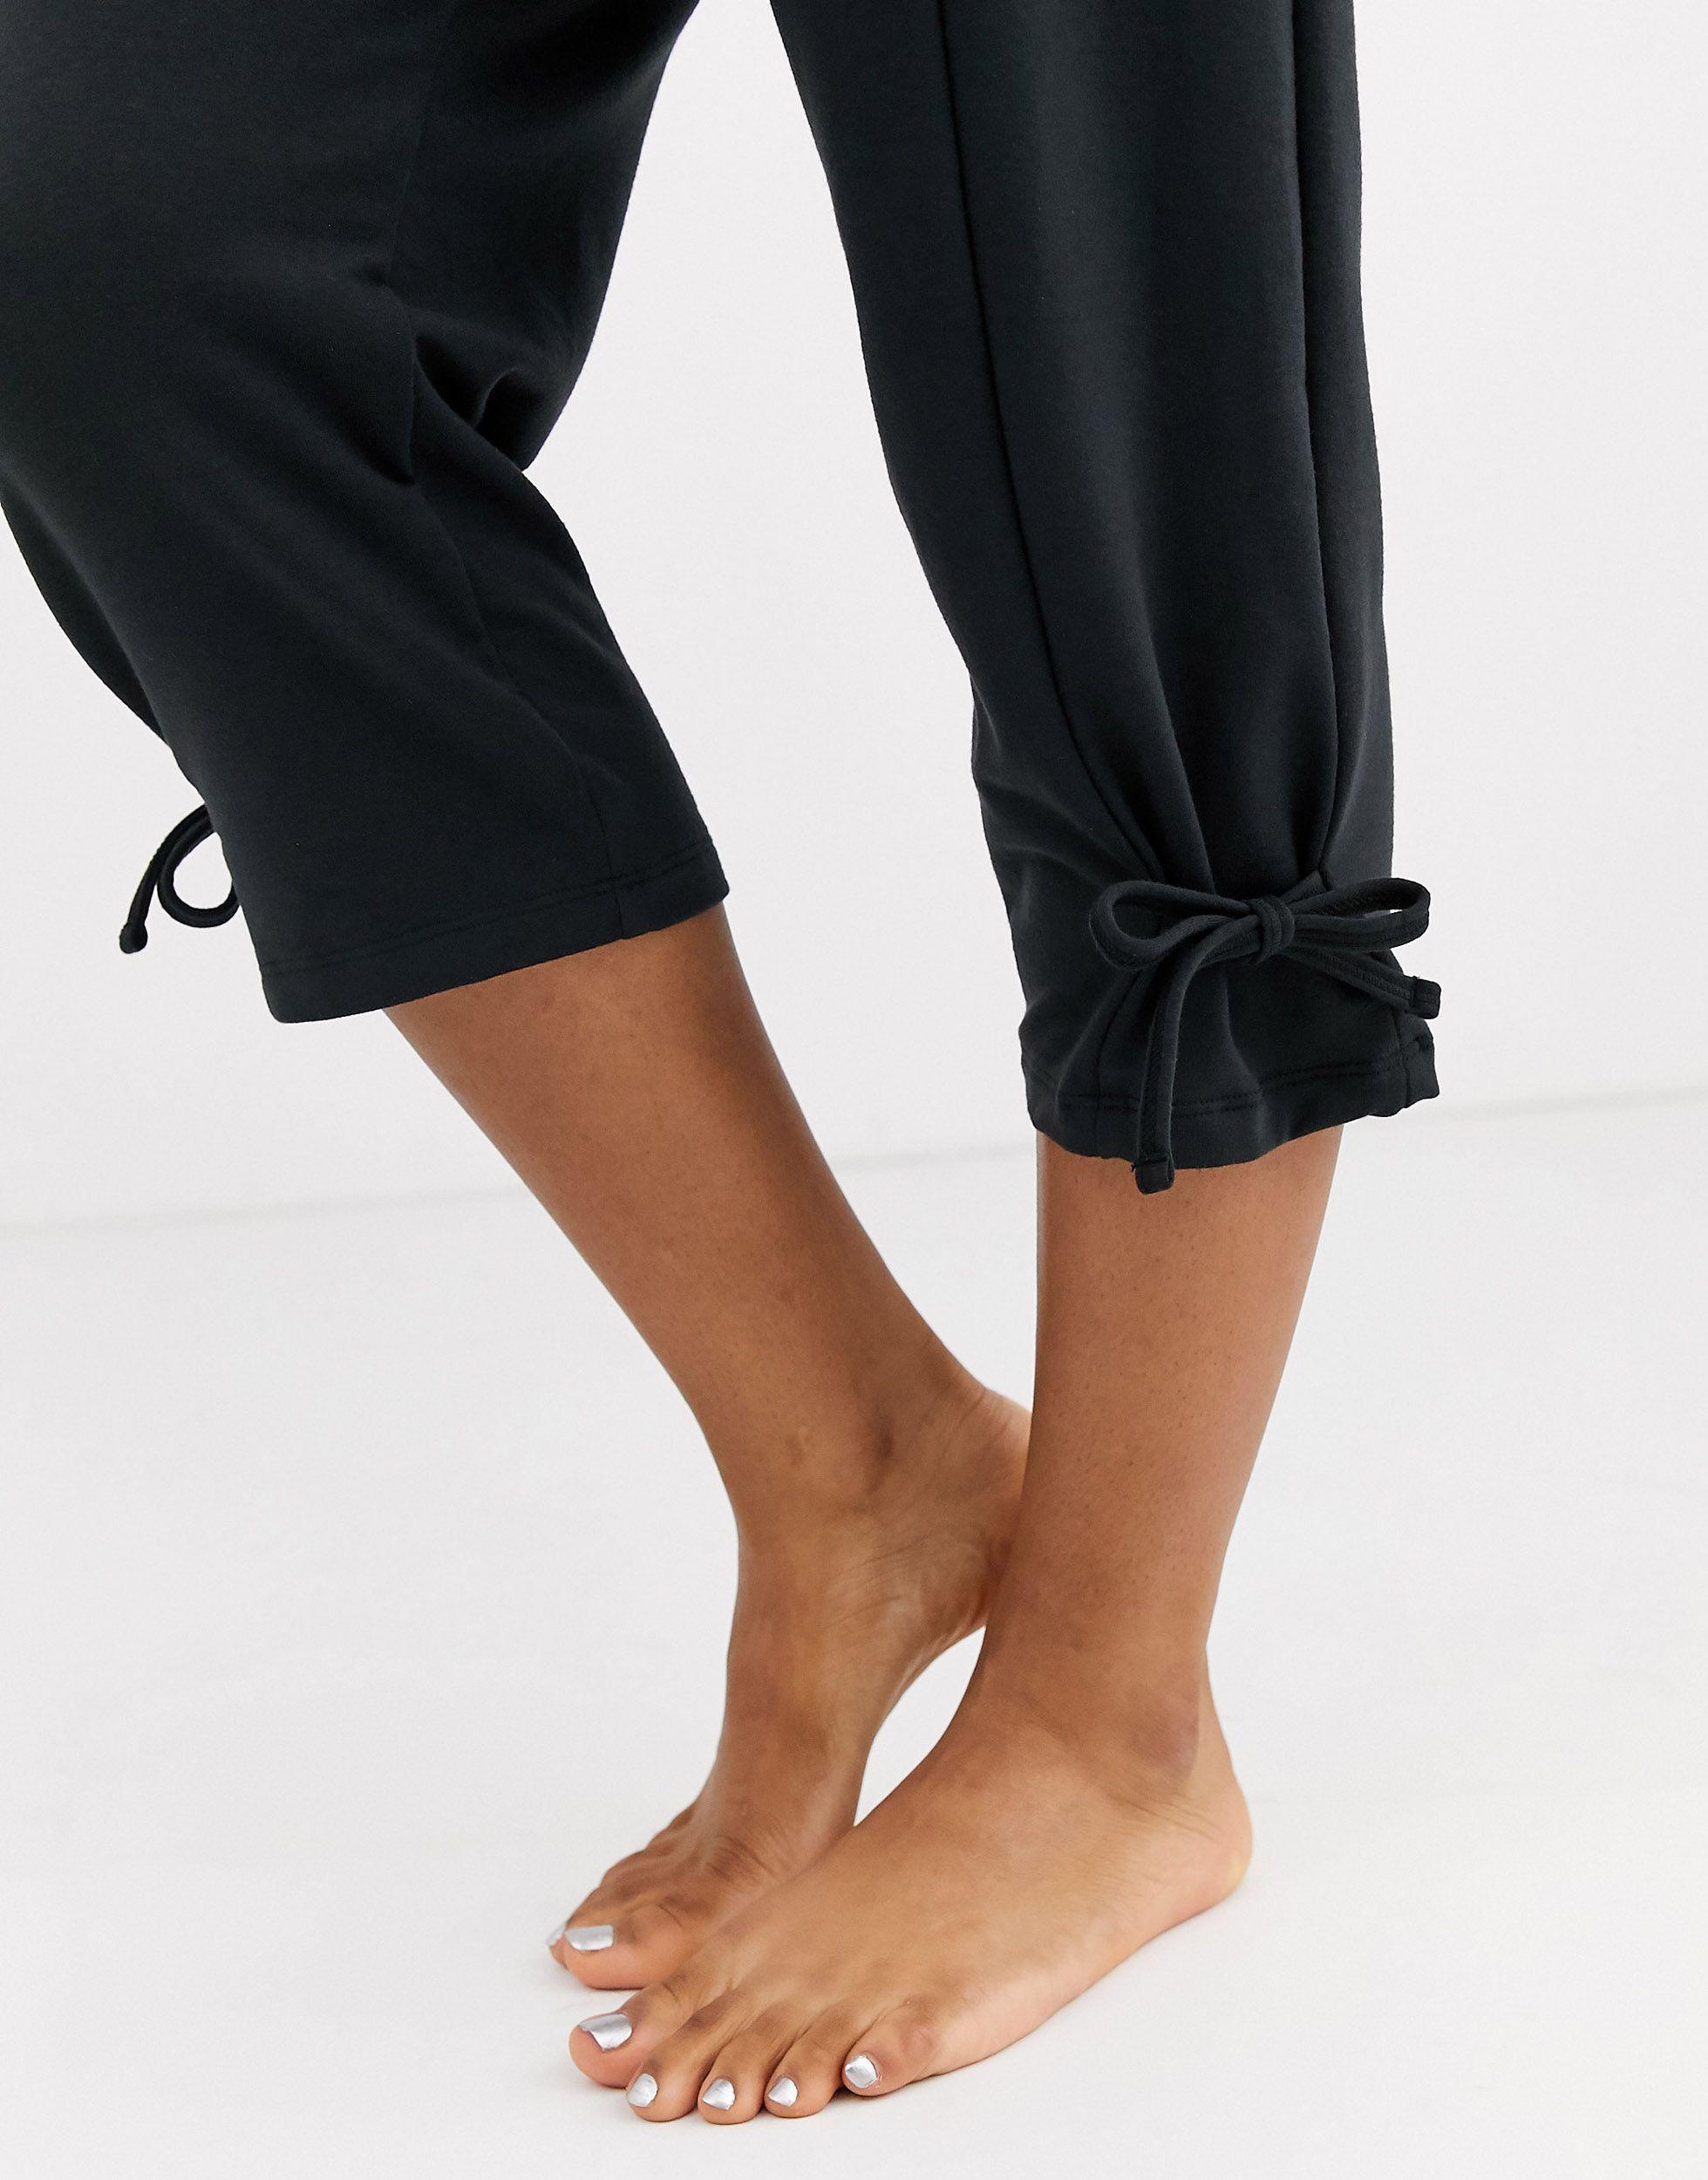 Nike Nike Yoga leggings With Tie Detail in Black